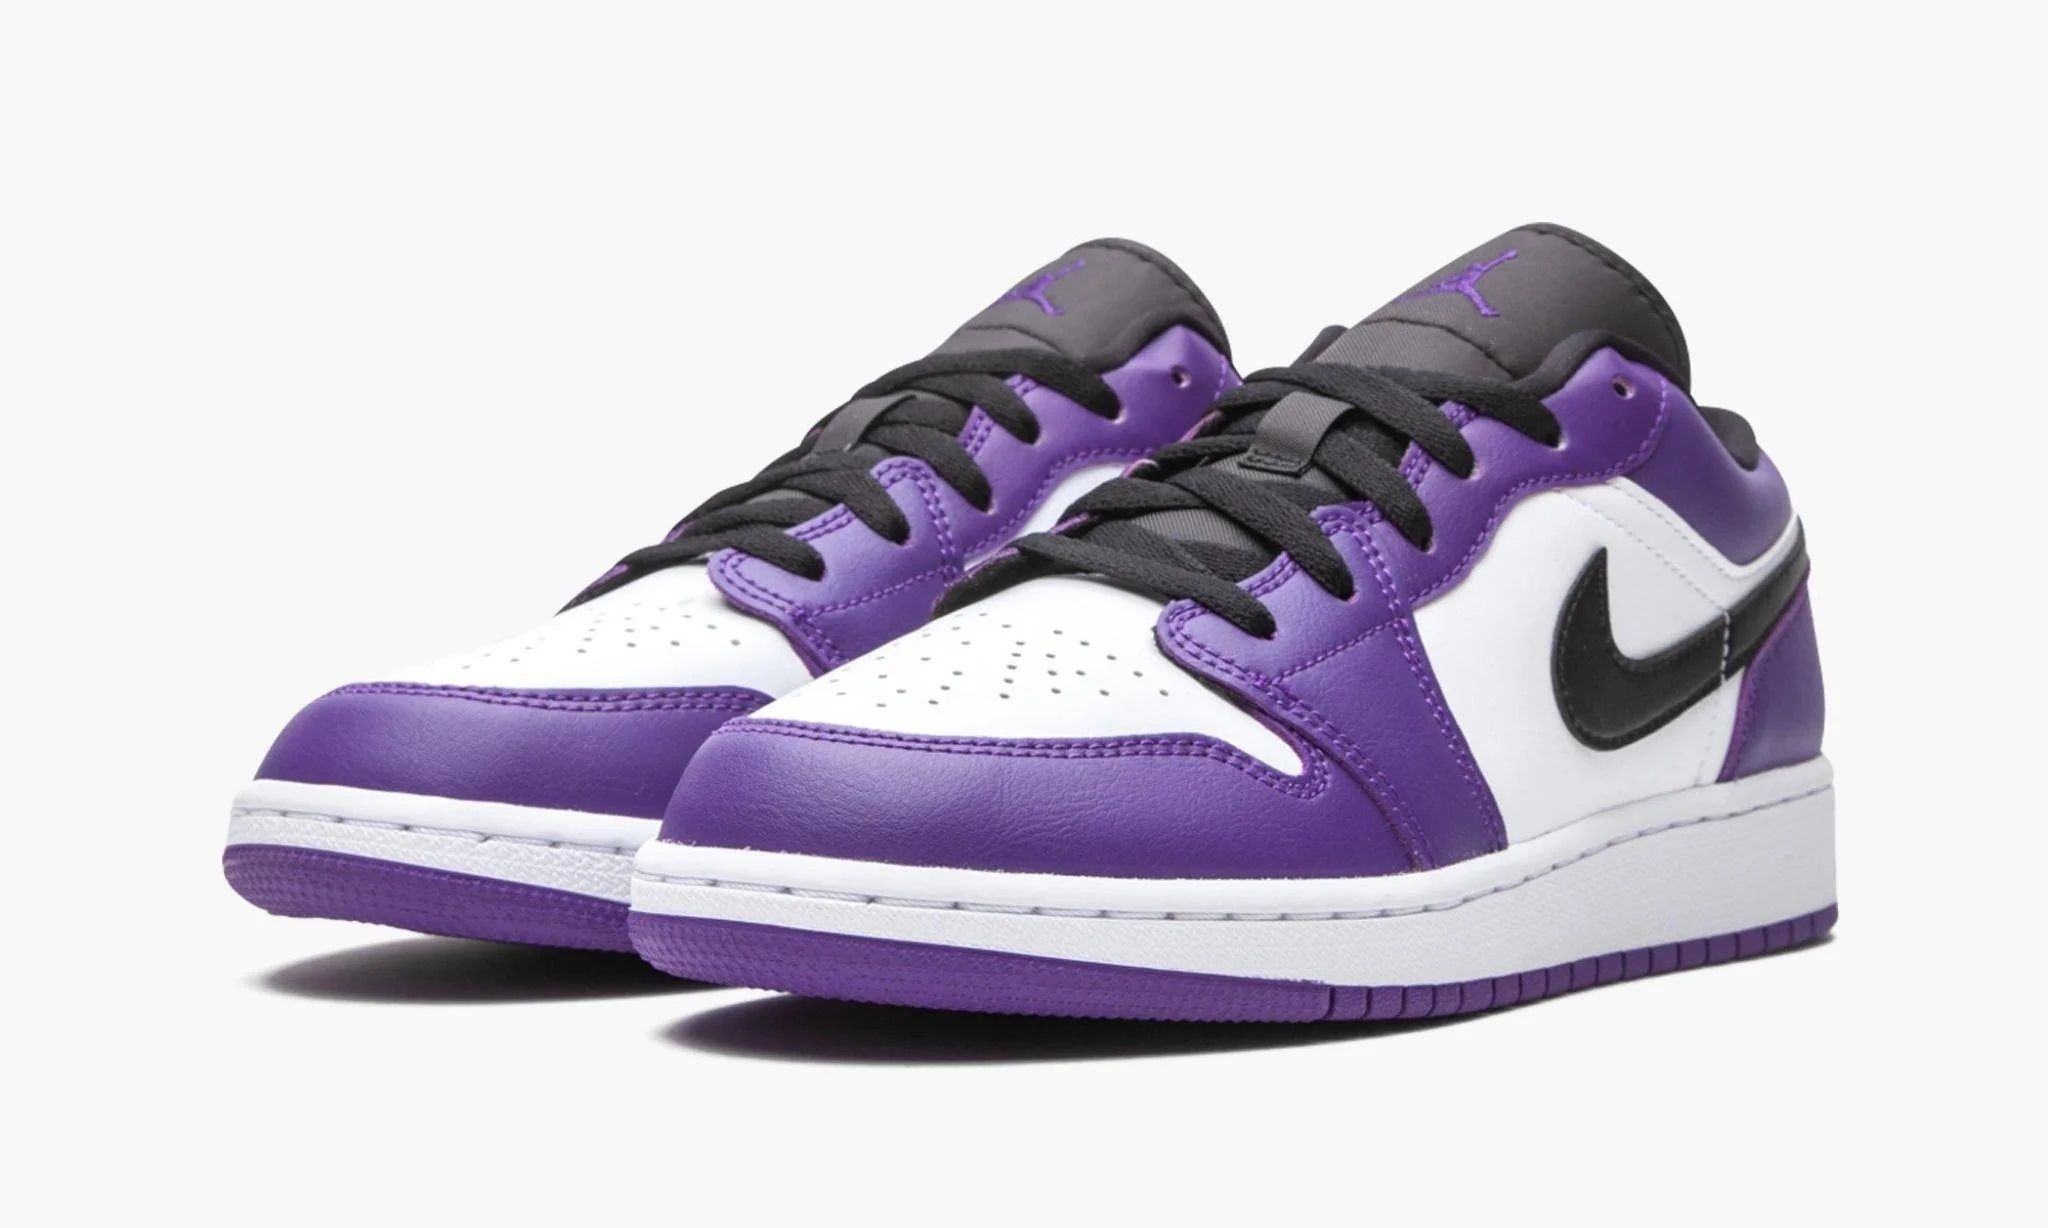 Nike Air Jordan 1 Low Court Purple. Nike Jordan 1 Low Court Purple. Nike Air Jordan 1 Low Purple. Nike Jordan 1 Low Purple. Purple air купить